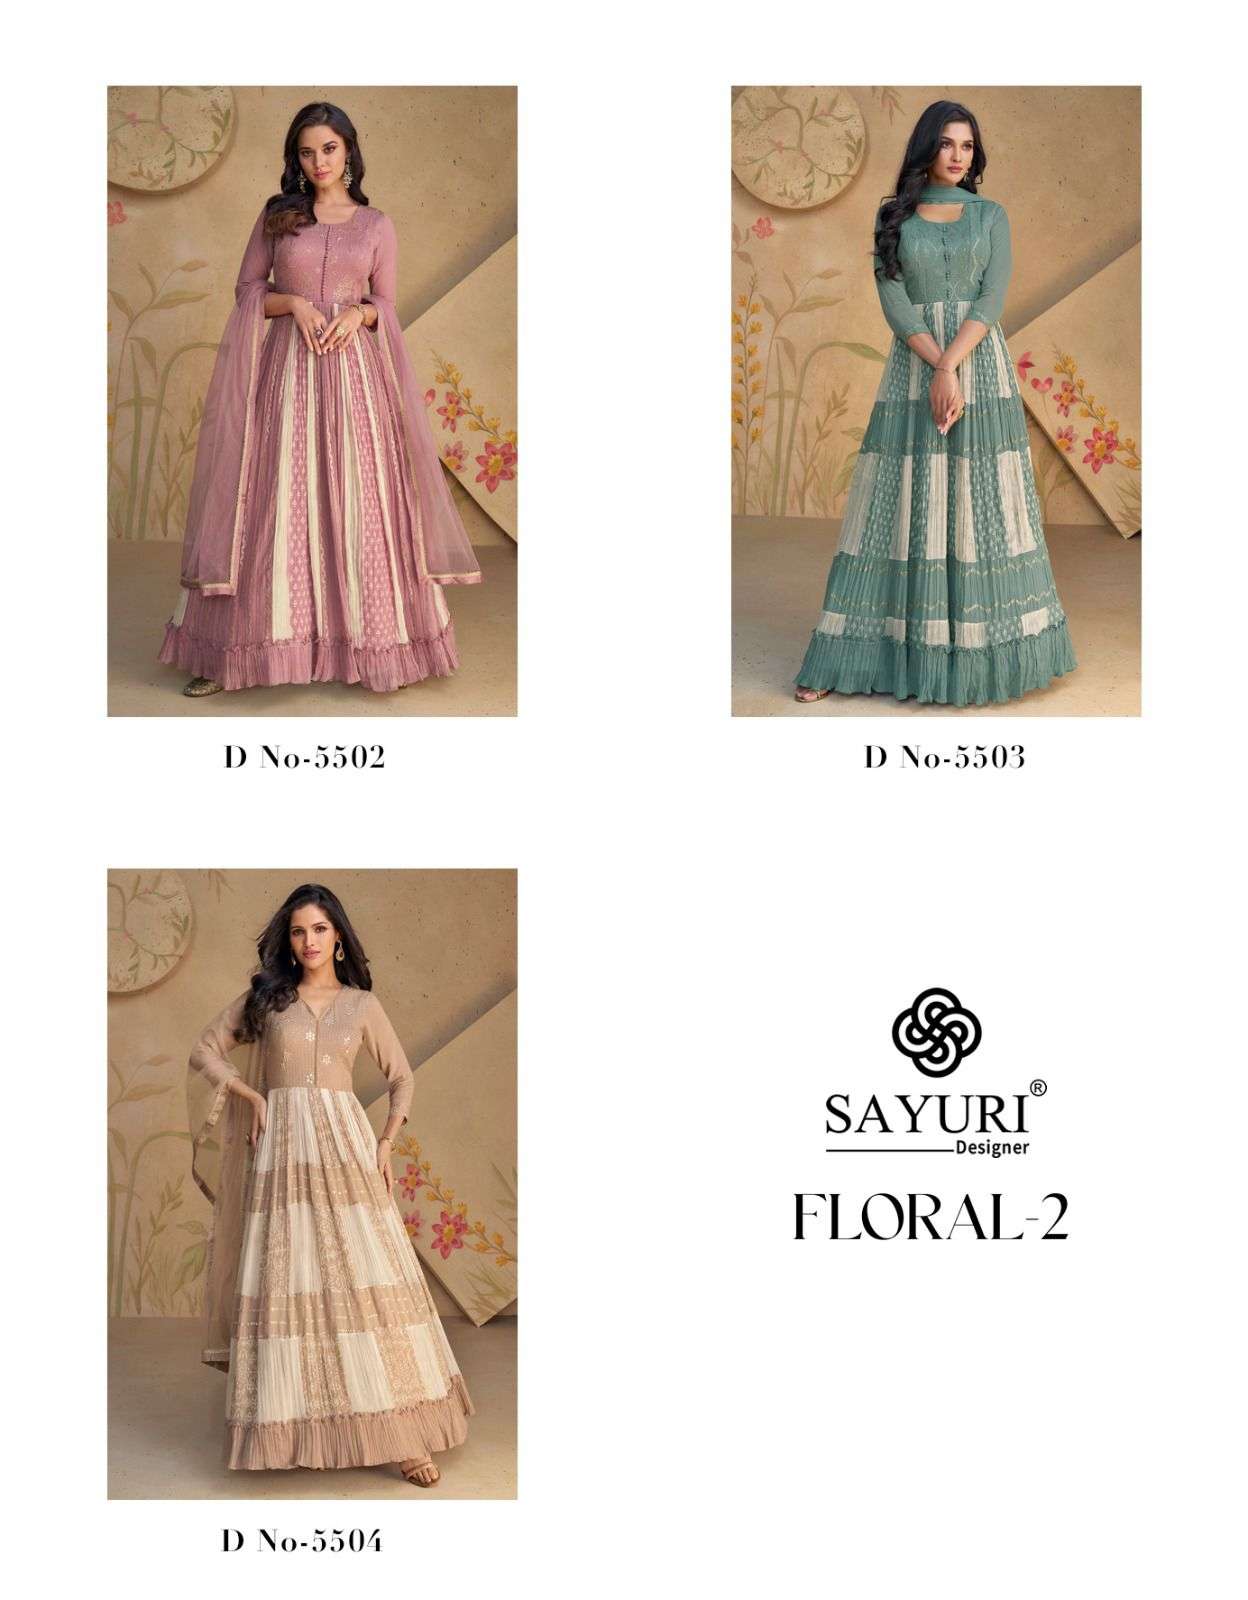 Sayuri Floral 2 Georgette Designer Salwar Kameez Wholesale catalog